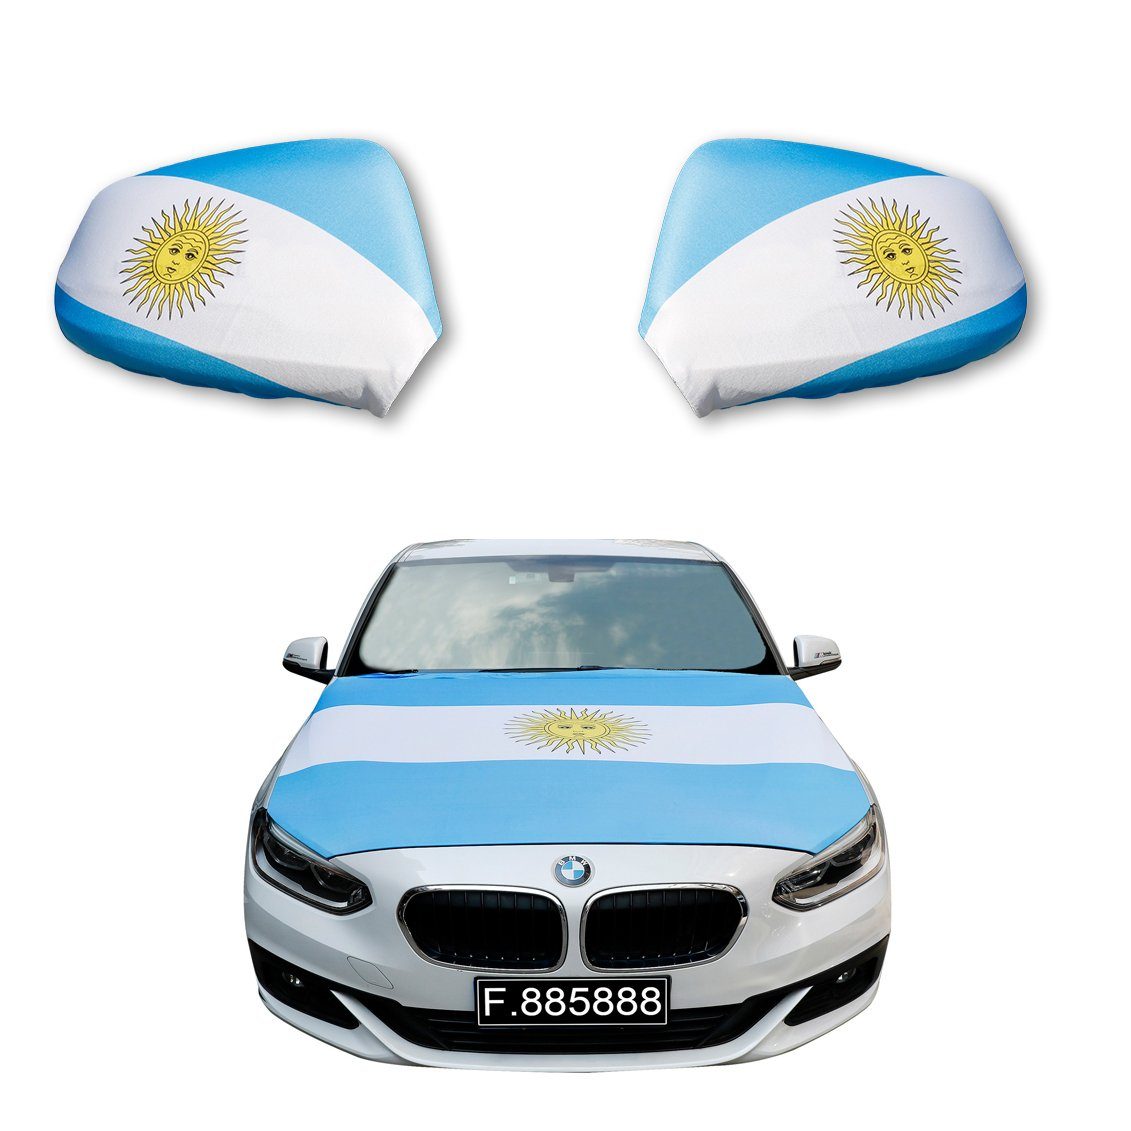 Sonia Originelli Fahne Fanset "Argentinien" Argentina Fußball Motorhaube Außenspiegel Flagge, für alle gängigen PKW Modelle, Motorhauben Flagge: ca. 115 x 150cm